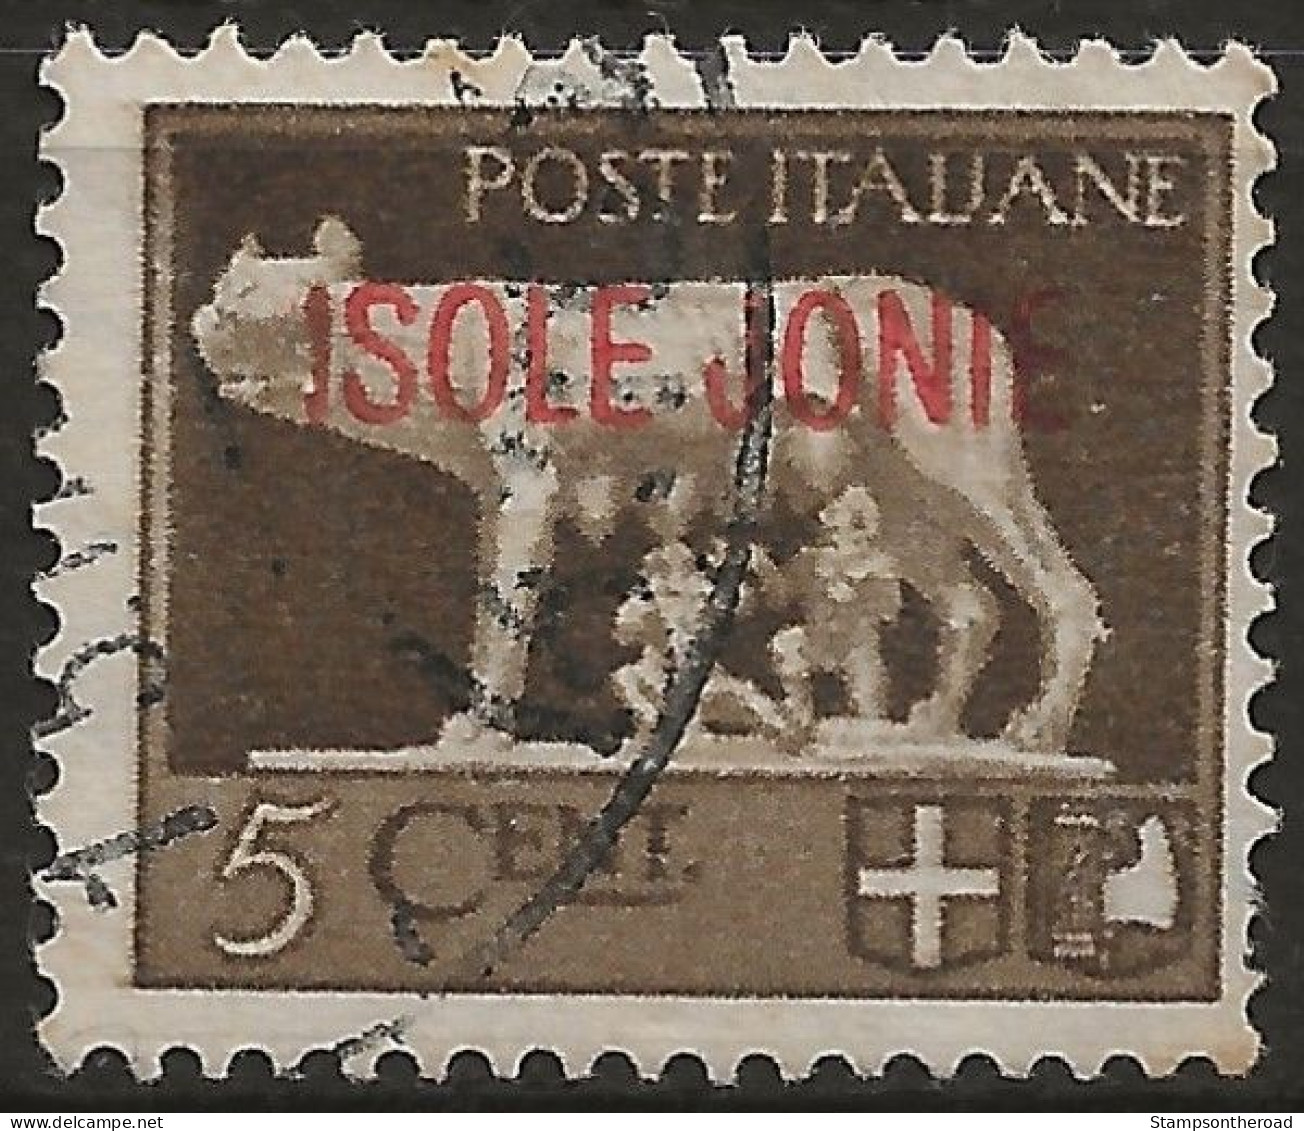 OIJO1U5 - 1941 Occup. Milit. Ital. ZANTE, Sass. Nr. 1, Francobollo Usato Per Posta °/ - Îles Ioniennes